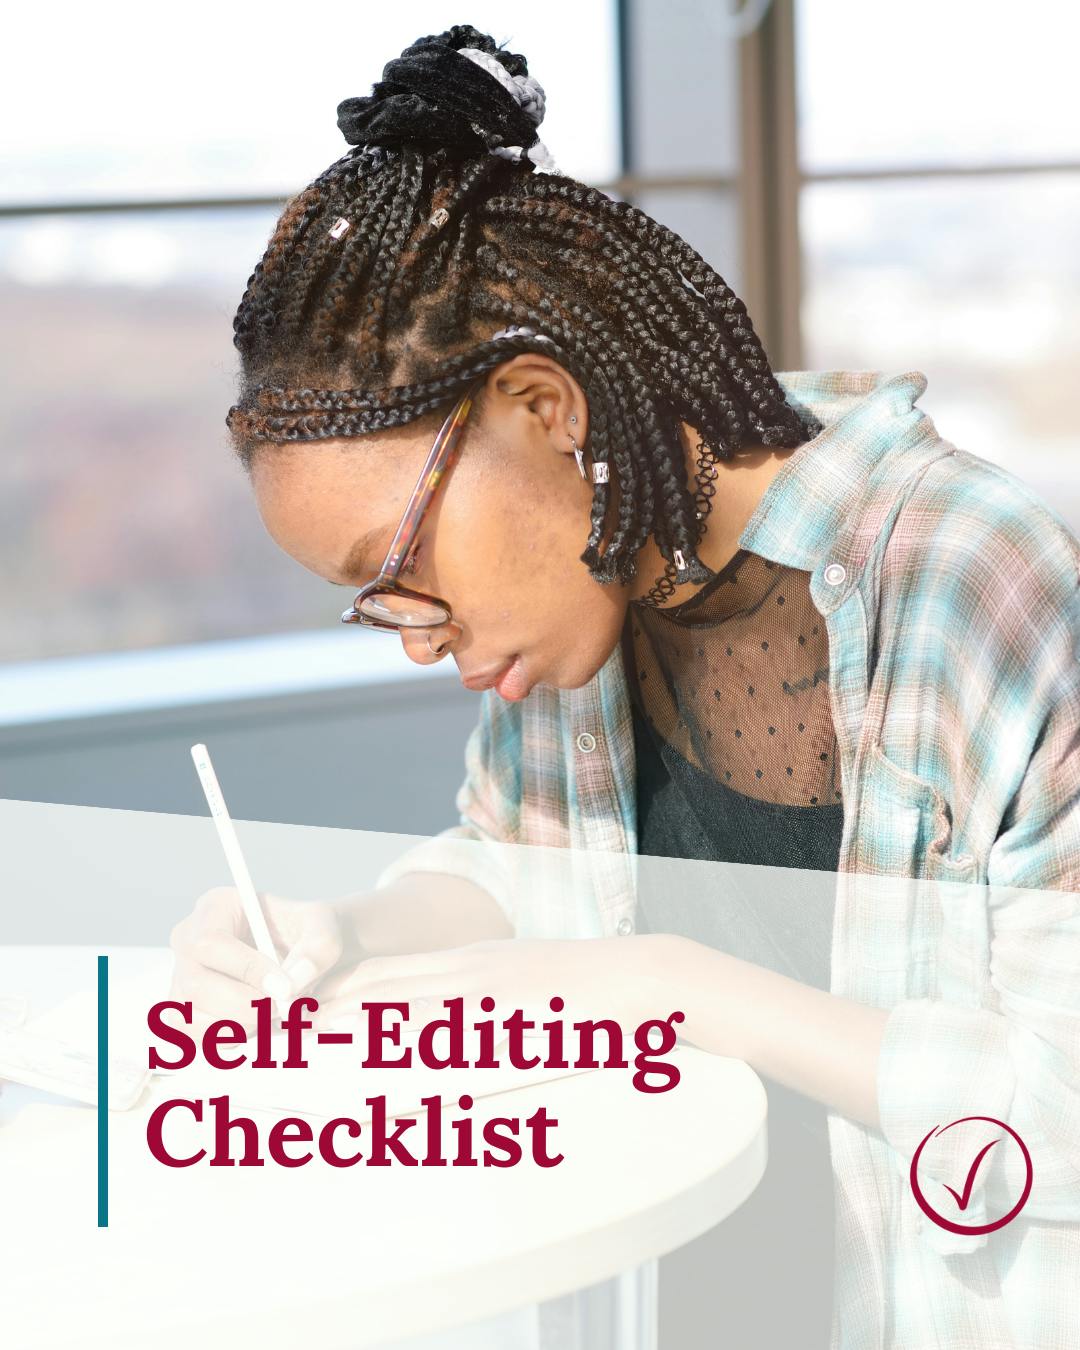 Self-Editing Checklist